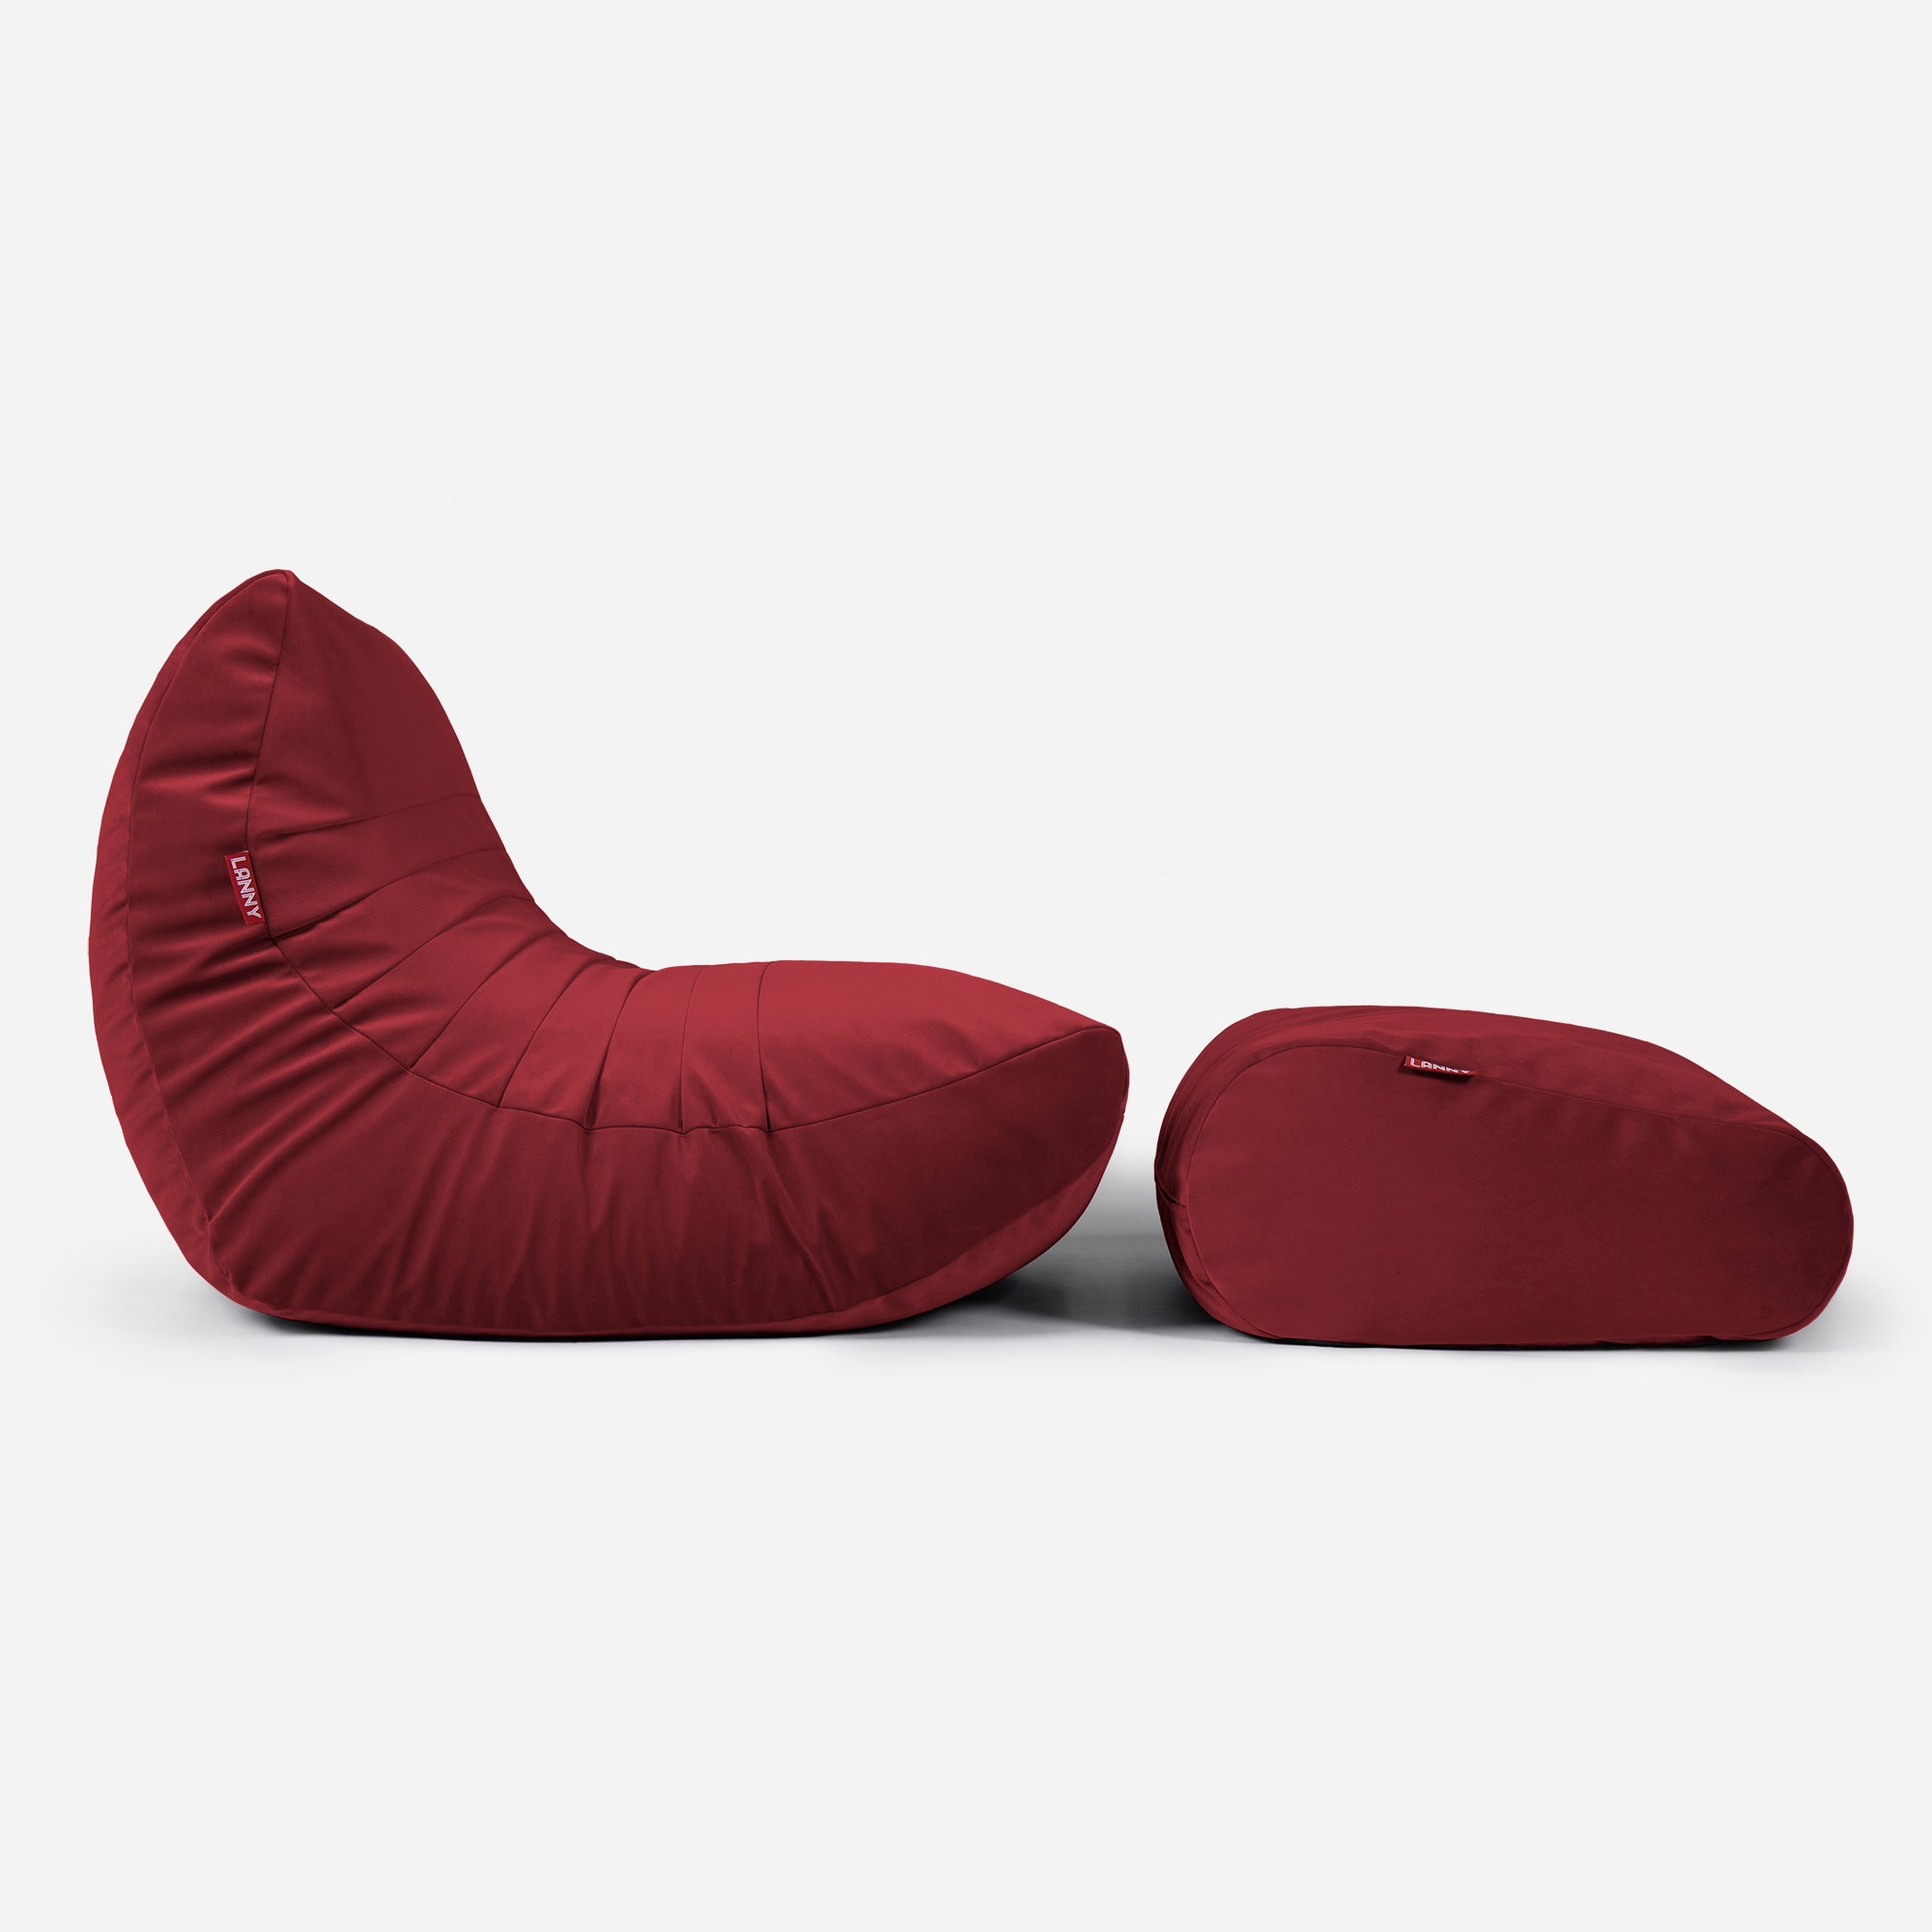 Beanbag Curvy Design Red color